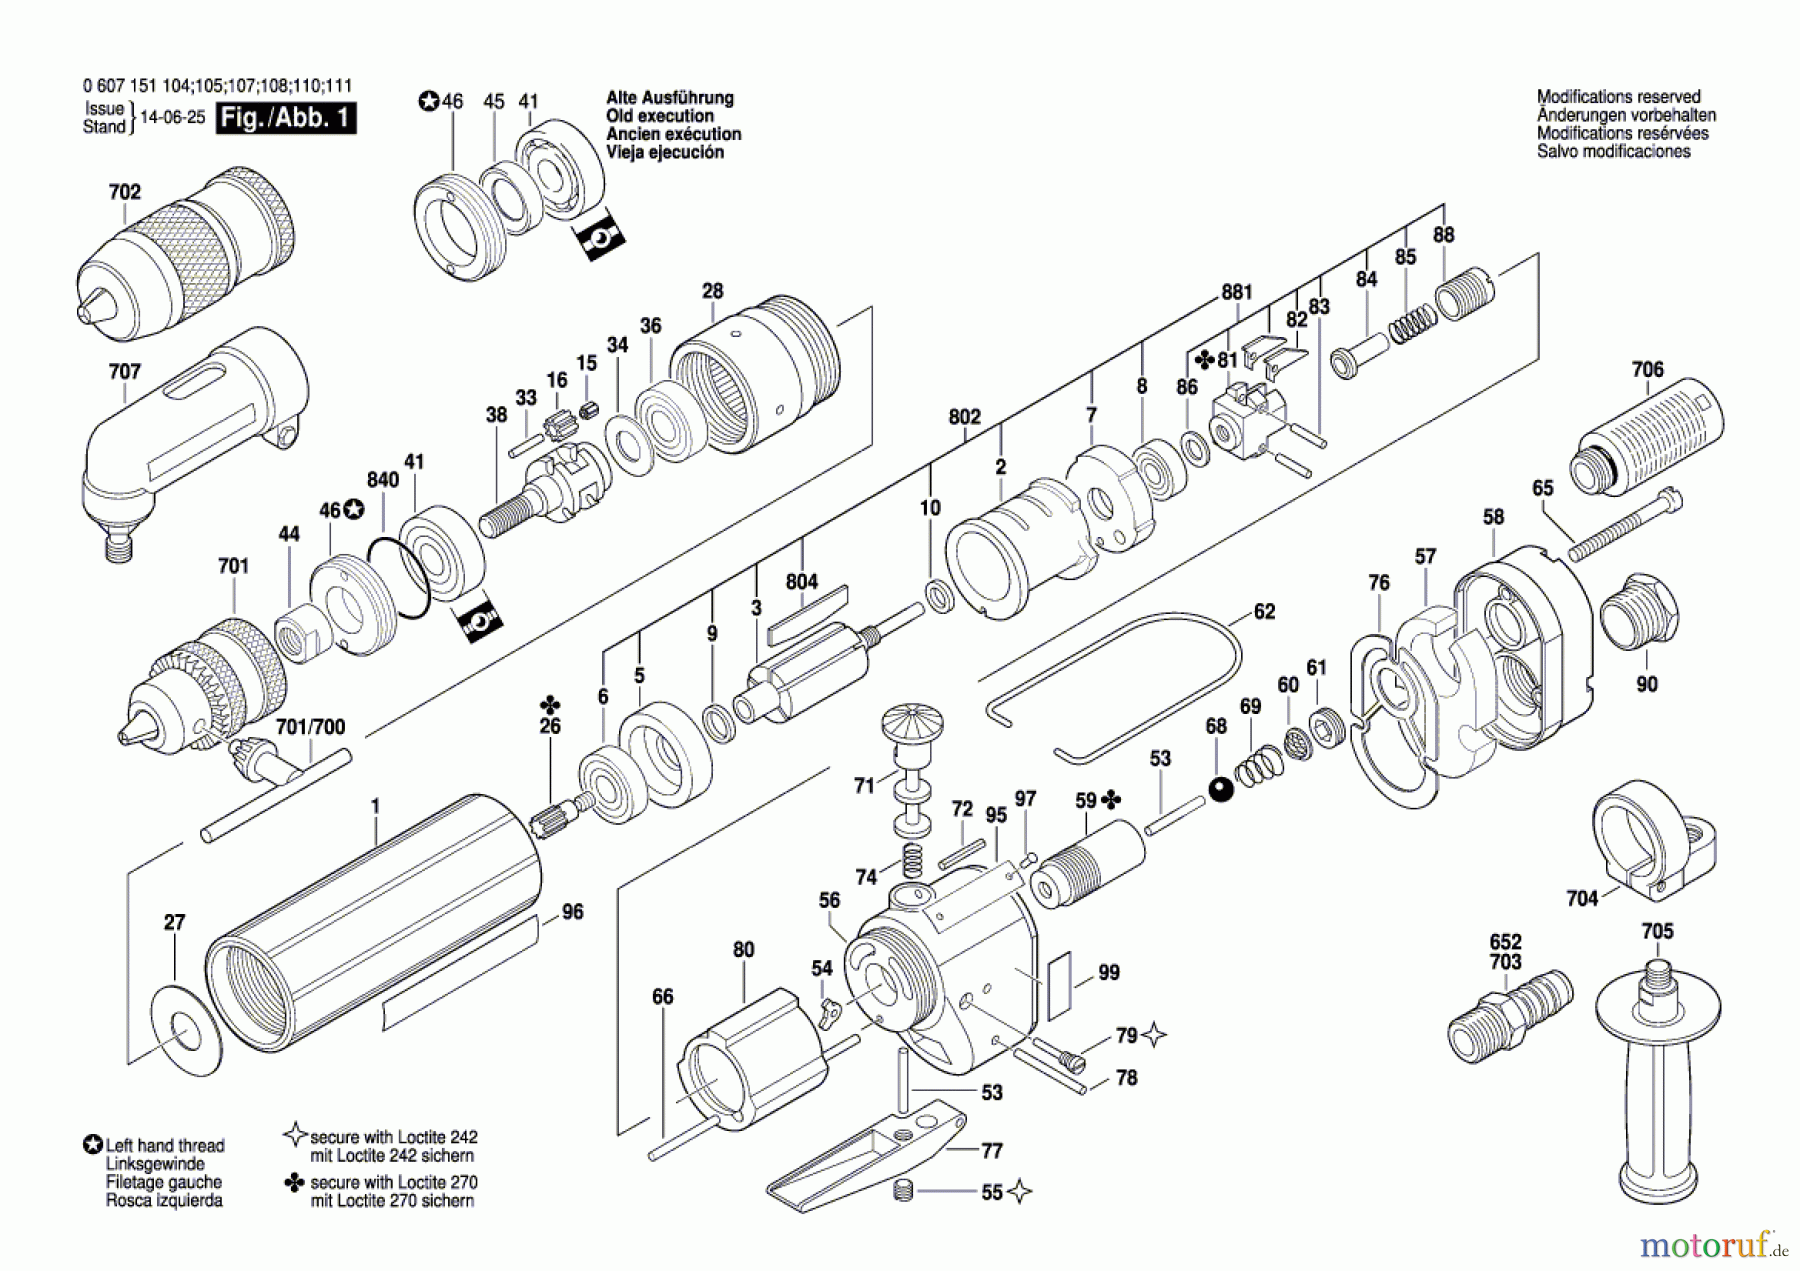  Bosch Werkzeug Bohrmaschine 370 WATT-SERIE Seite 1